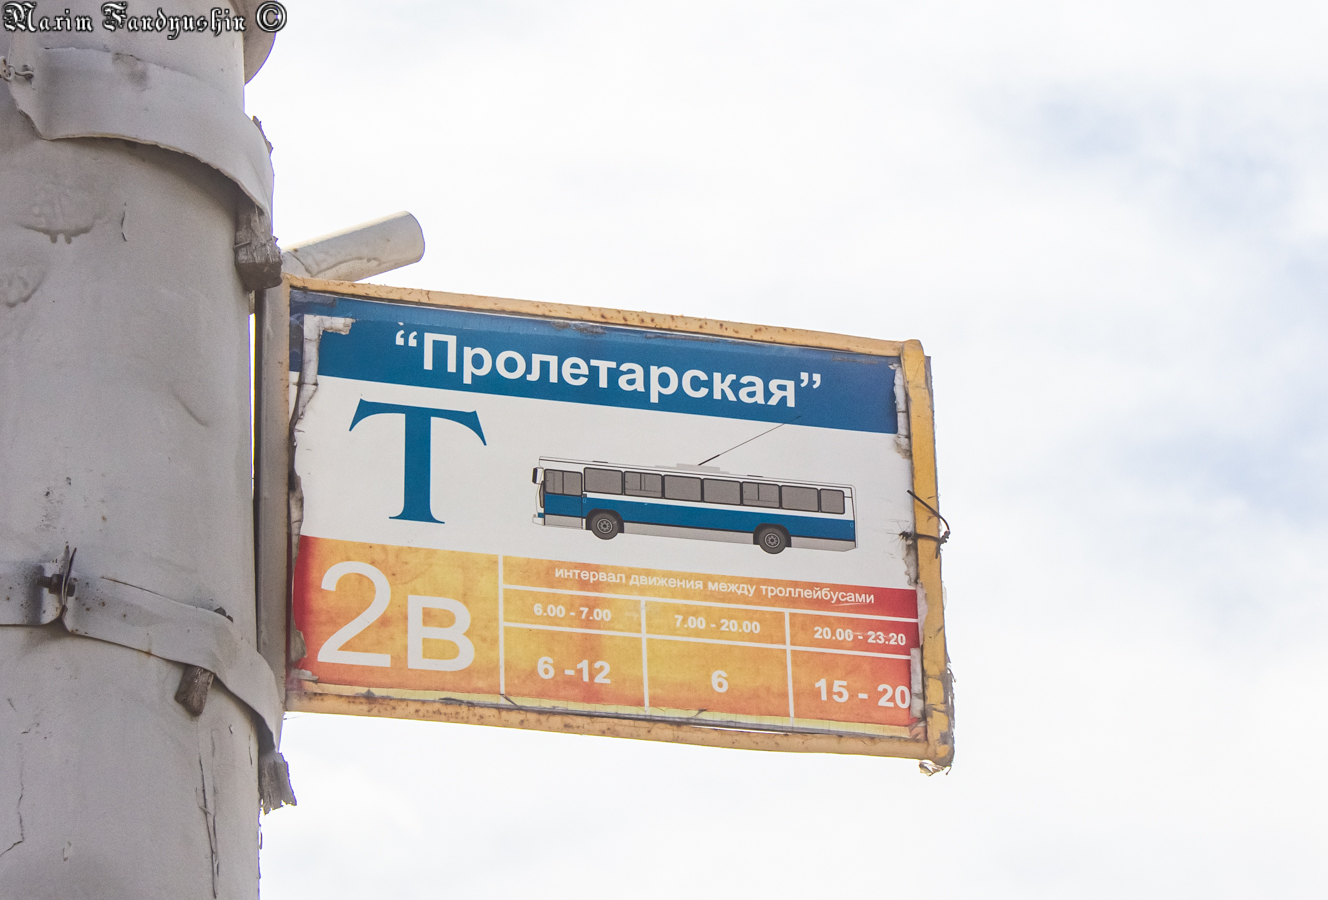 Благавешчанск — Разные фотографии